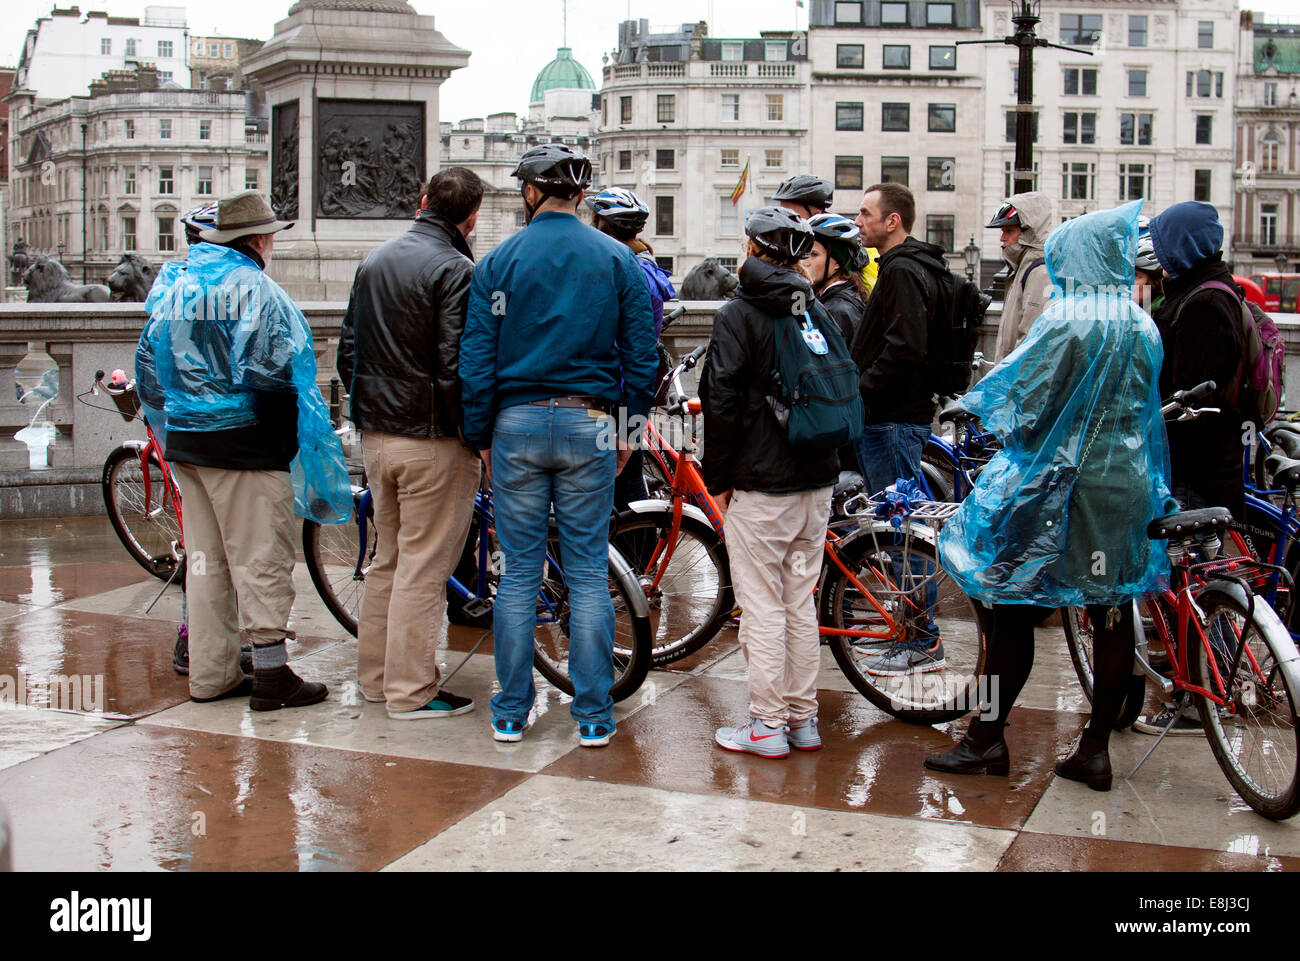 Persone su un tour in bicicletta in condizioni di bagnato, Trafalgar Square, London, Regno Unito Foto Stock